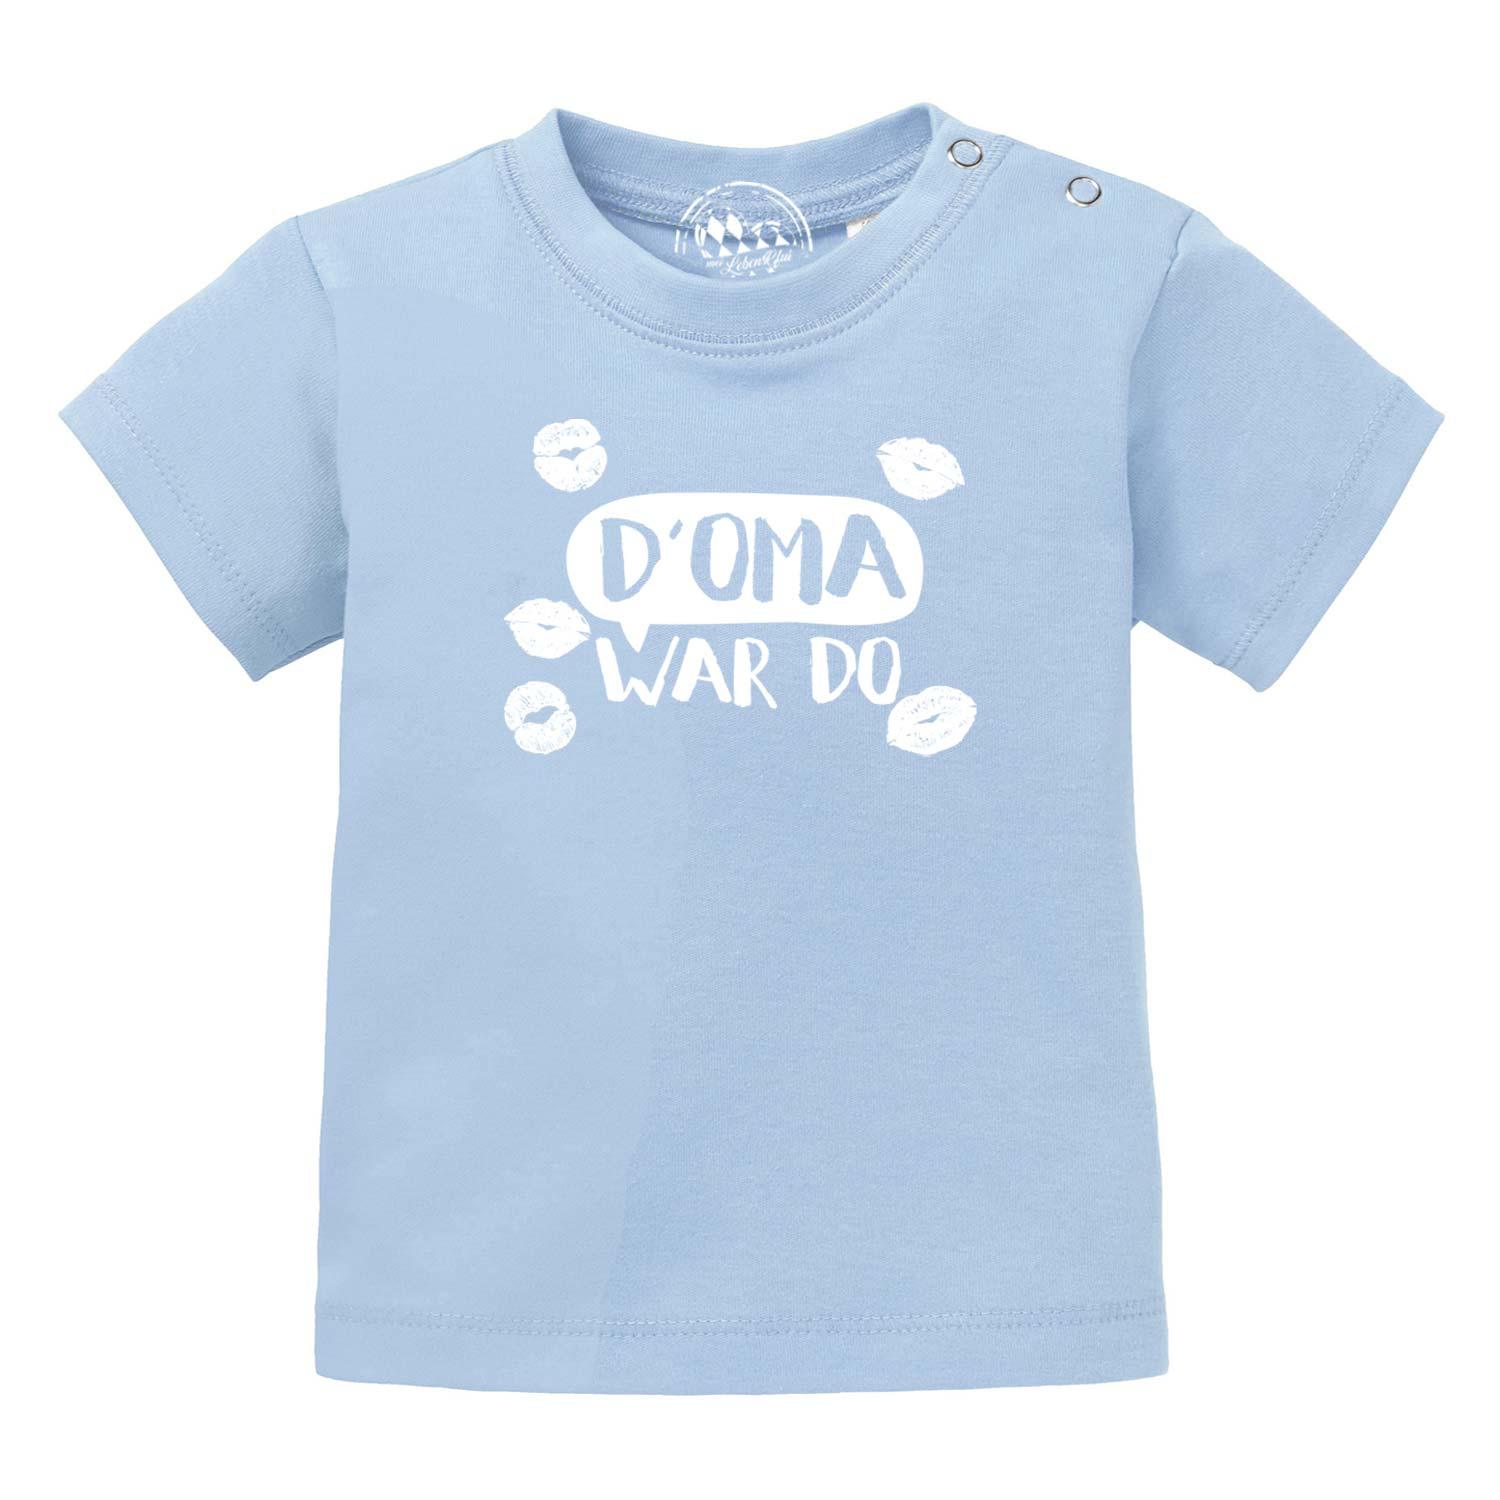 Baby T-Shirt "D' Oma war do…" - bavariashop - mei LebensGfui